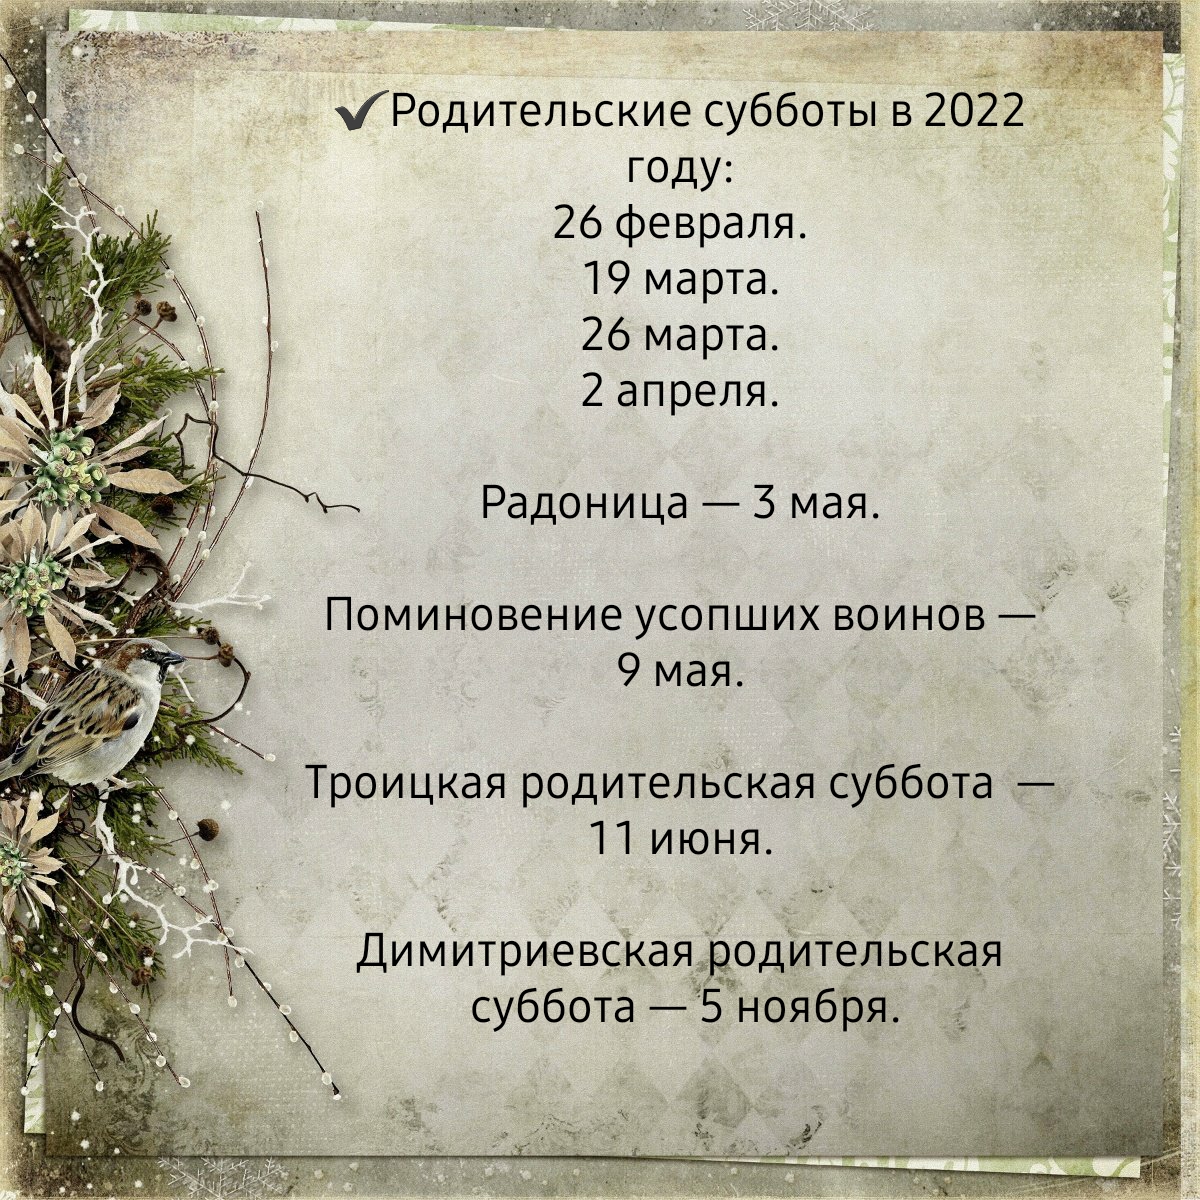 Родительская 2023 г. Родительские субботы в 2023 году православные поминальные. Родительская суббота в 2022. Родительские субботы в 2022 году. Православные родительские субботы в 2022.